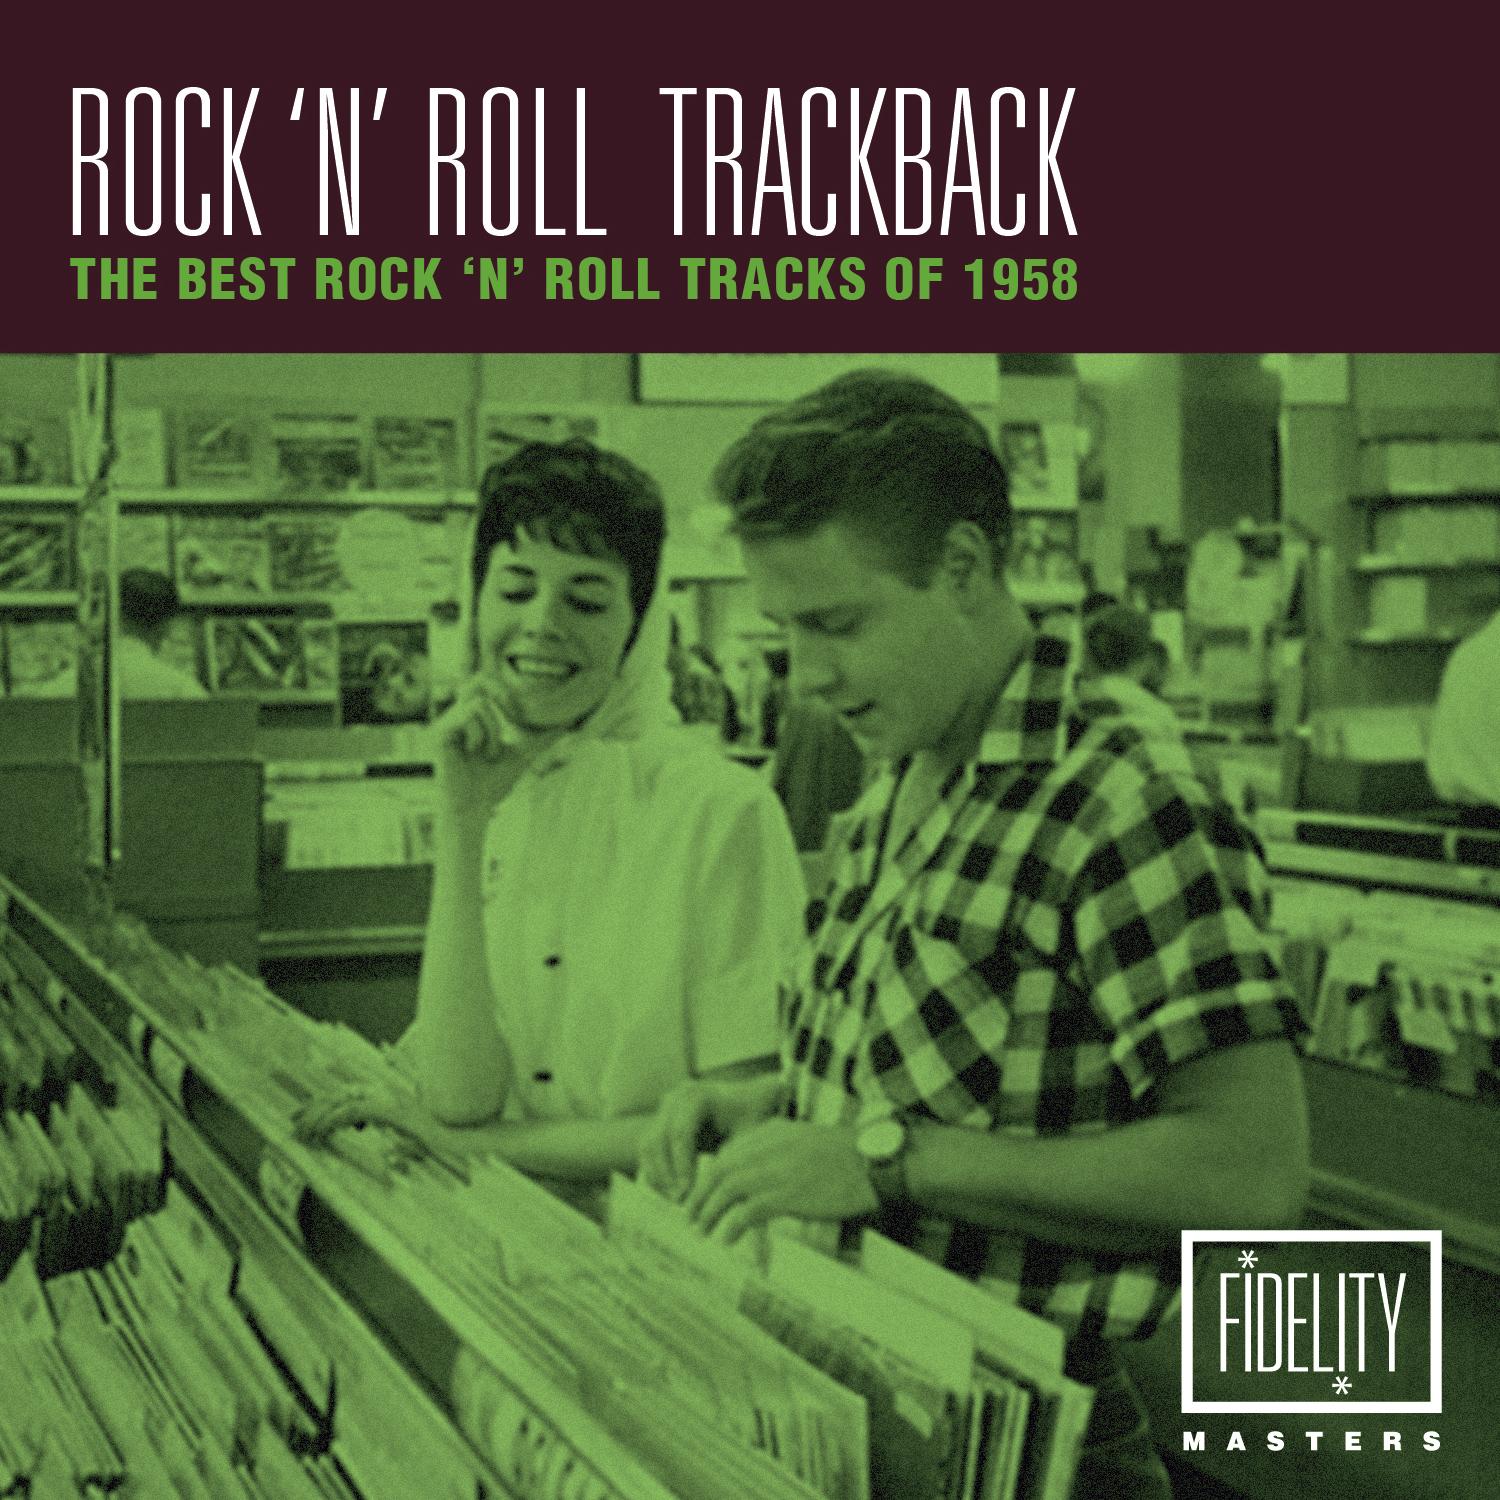 Rock 'N' Roll Trackback - The Best Rock 'N'roll Tracks of 1958 